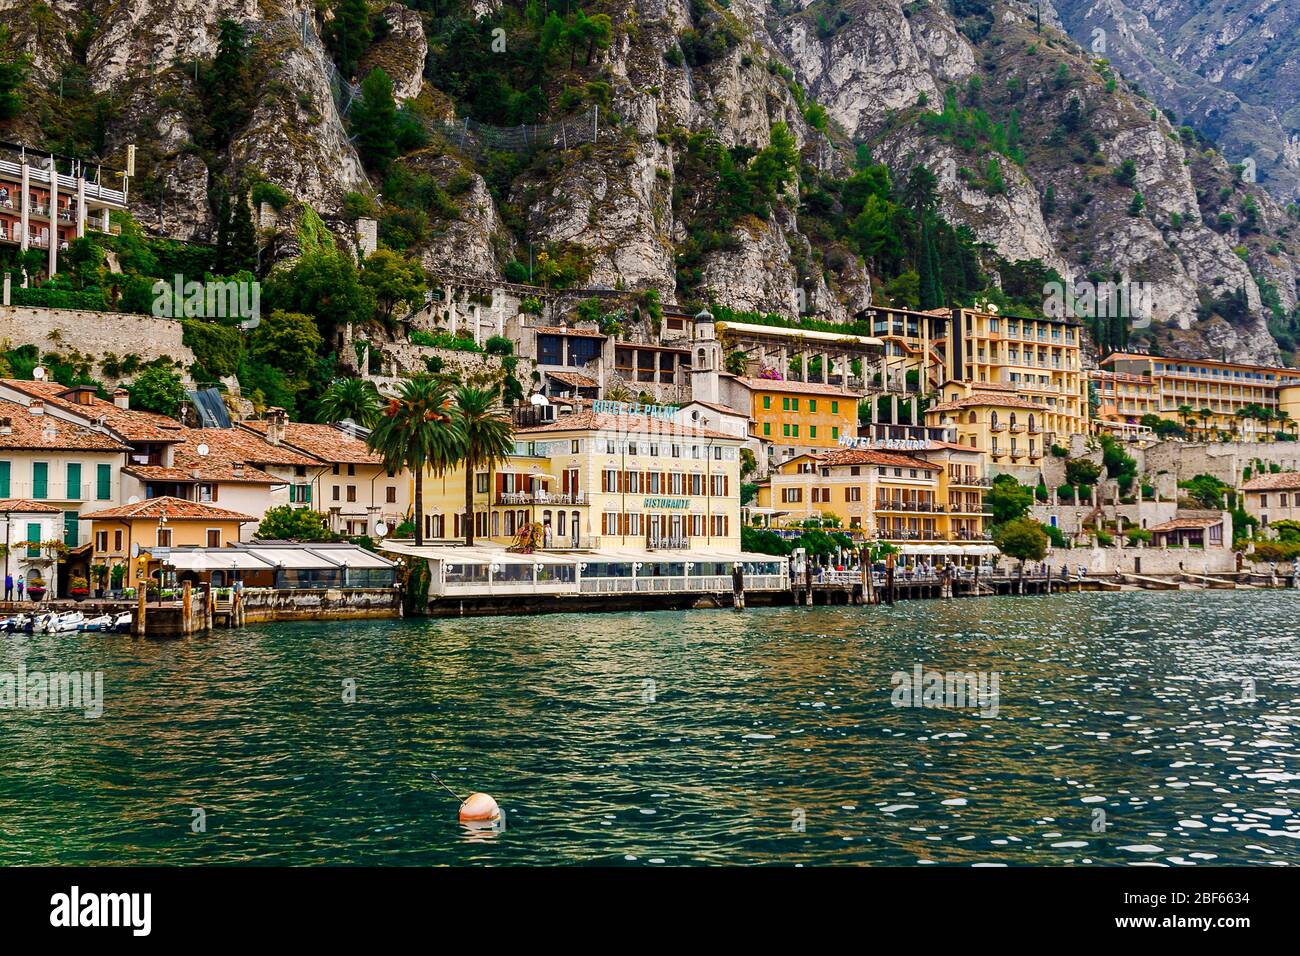 Limone sul Garda, Brescia / Italia - 24 settembre 2017: Case colorate e alberghi sulla riva del lago sullo sfondo delle montagne. Foto Stock